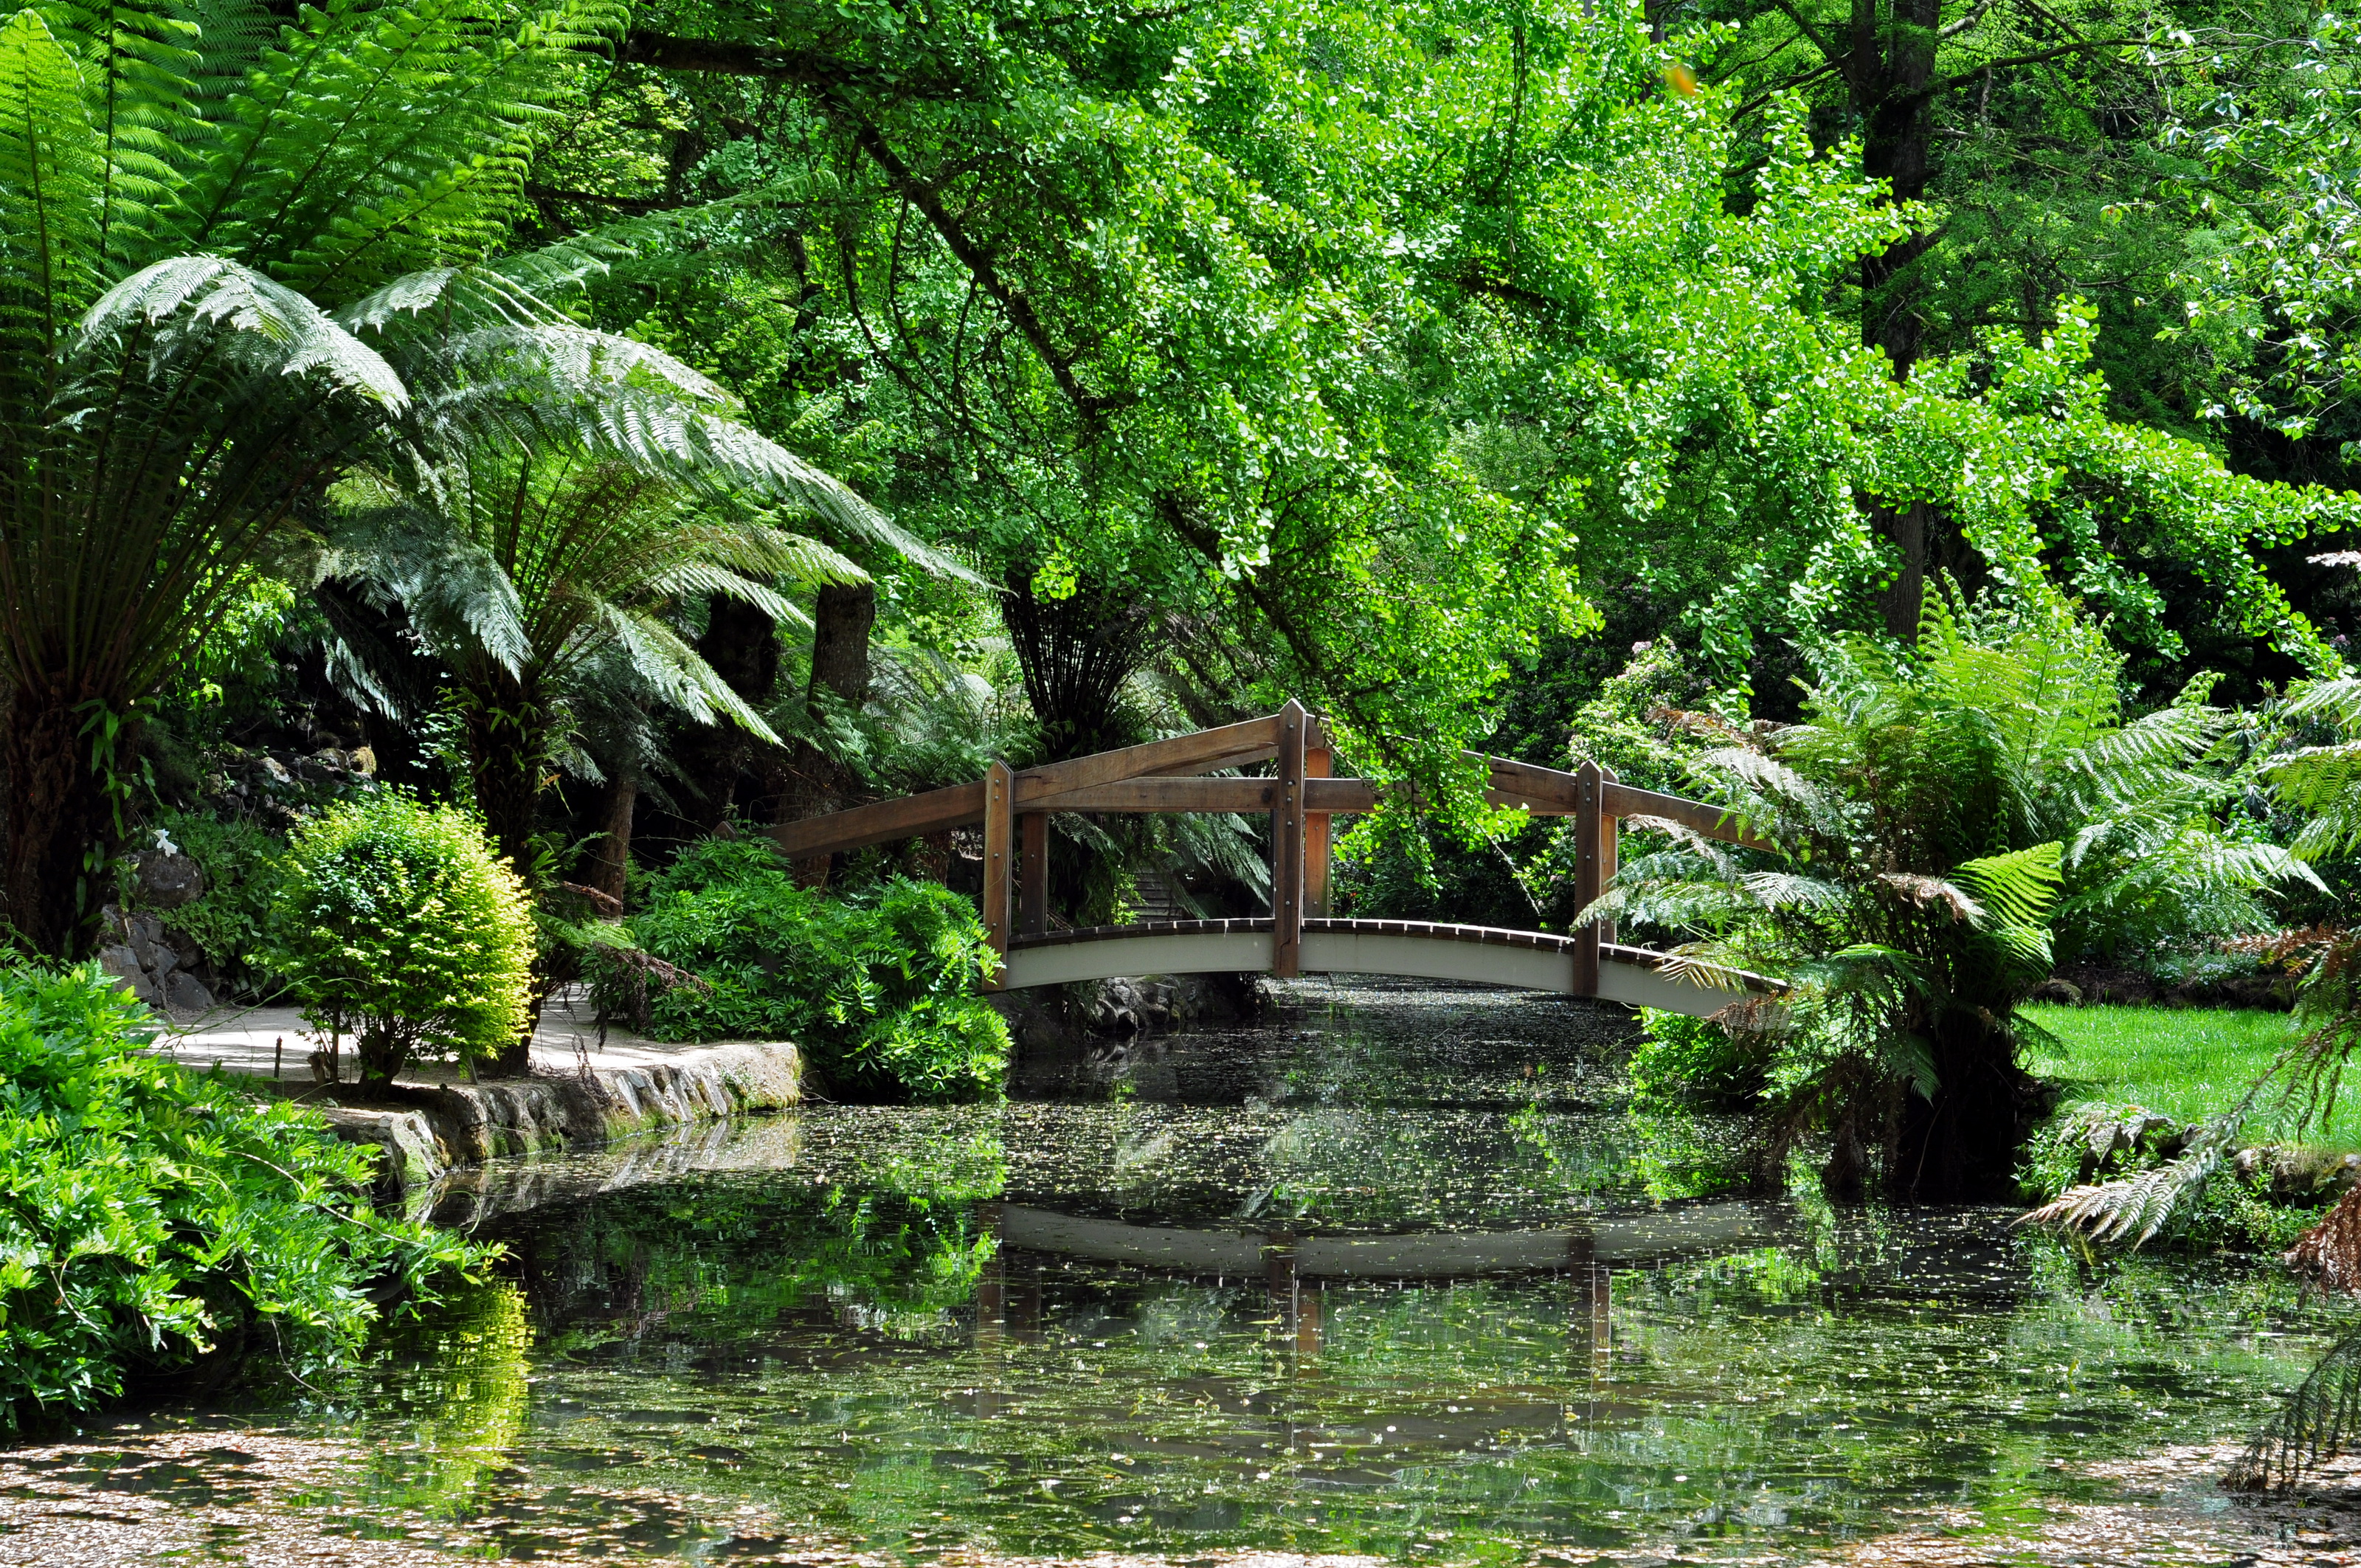 Сад джунгли. Растения Ботанический сад джунгли. Ботанический сад в лесу Индонезии. Сингапурский Ботанический сад тропический лес. Влажные тропический лес Сингапур.